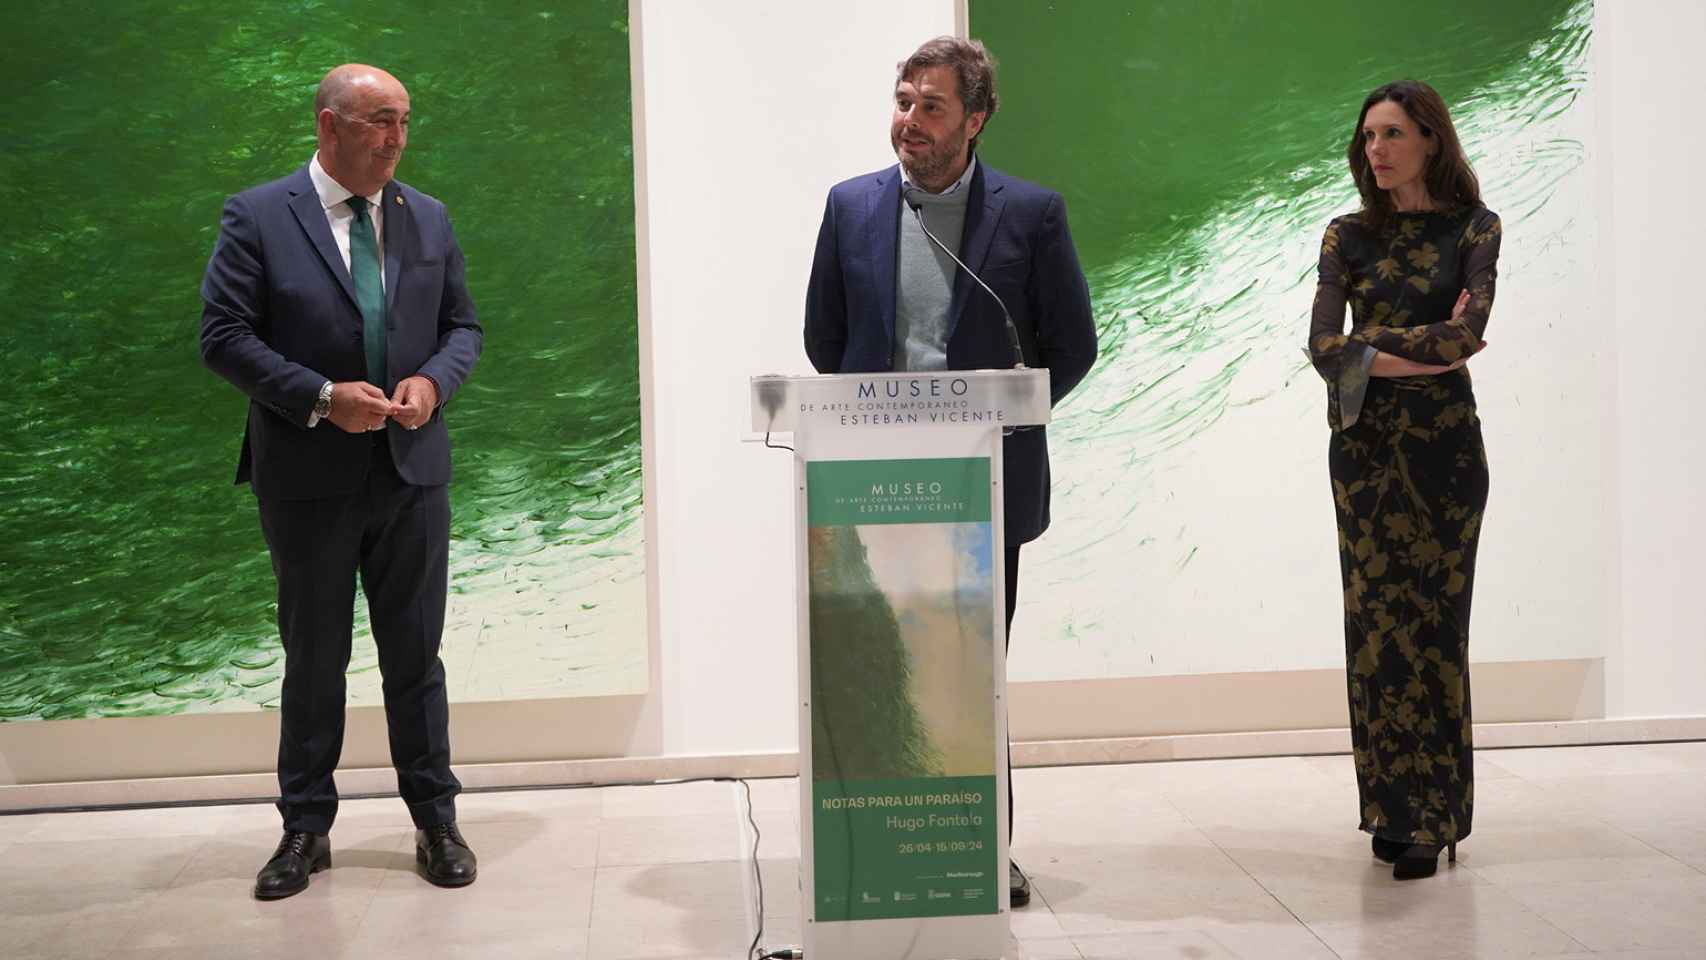 Inauguración de la exposición de Hugo Frontela.